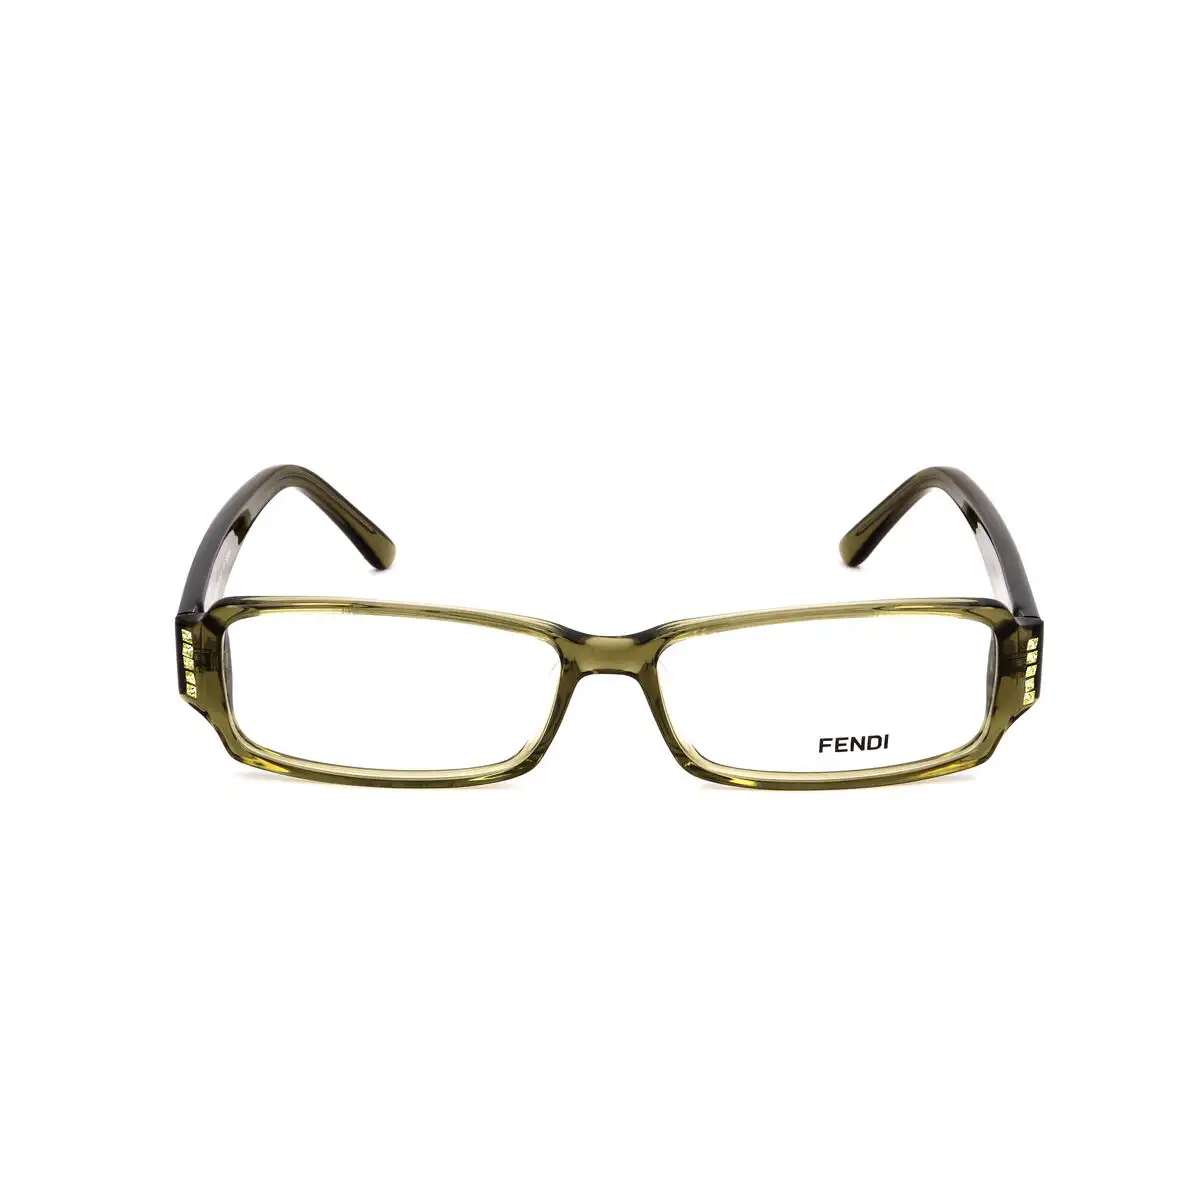 Monture de lunettes femme fendi fendi 850 662 53 vert_2384. DIAYTAR SENEGAL - Là où Chaque Achat a du Sens. Explorez notre gamme et choisissez des produits qui racontent une histoire, votre histoire.